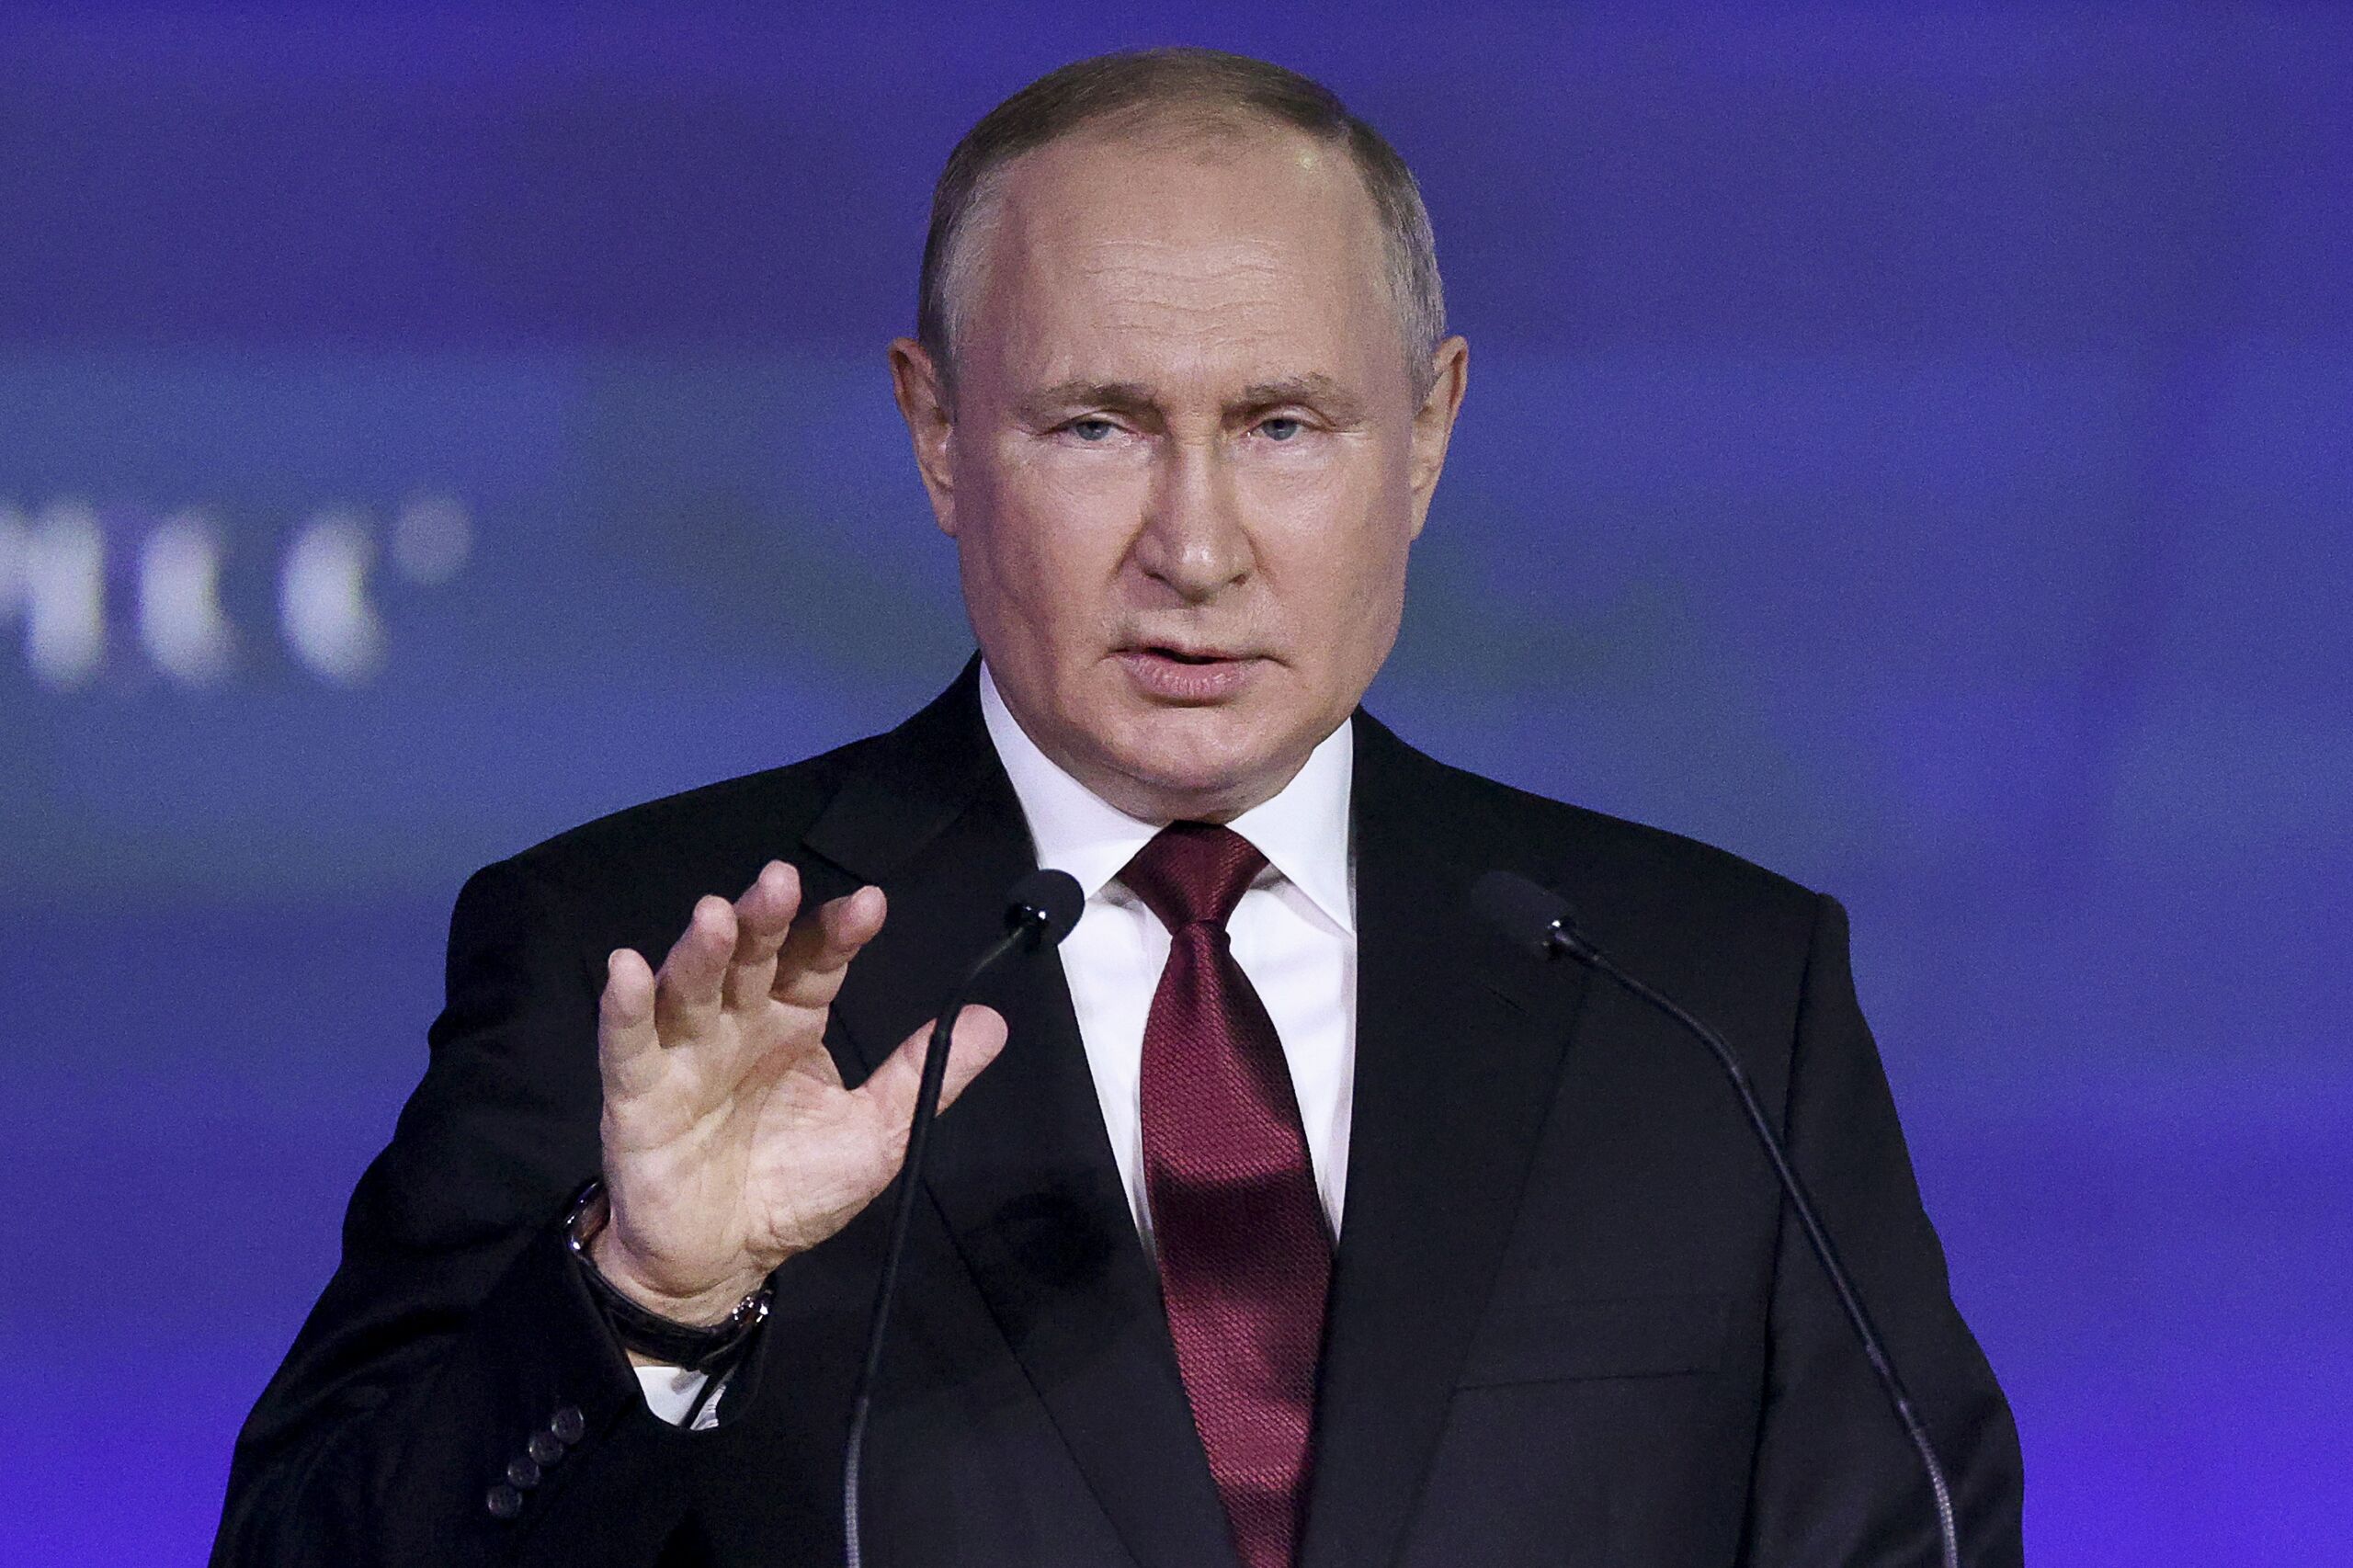 Poetin tijdens Internationale Economische Forum in Sint Petersburg op vrijdag 17 juni 